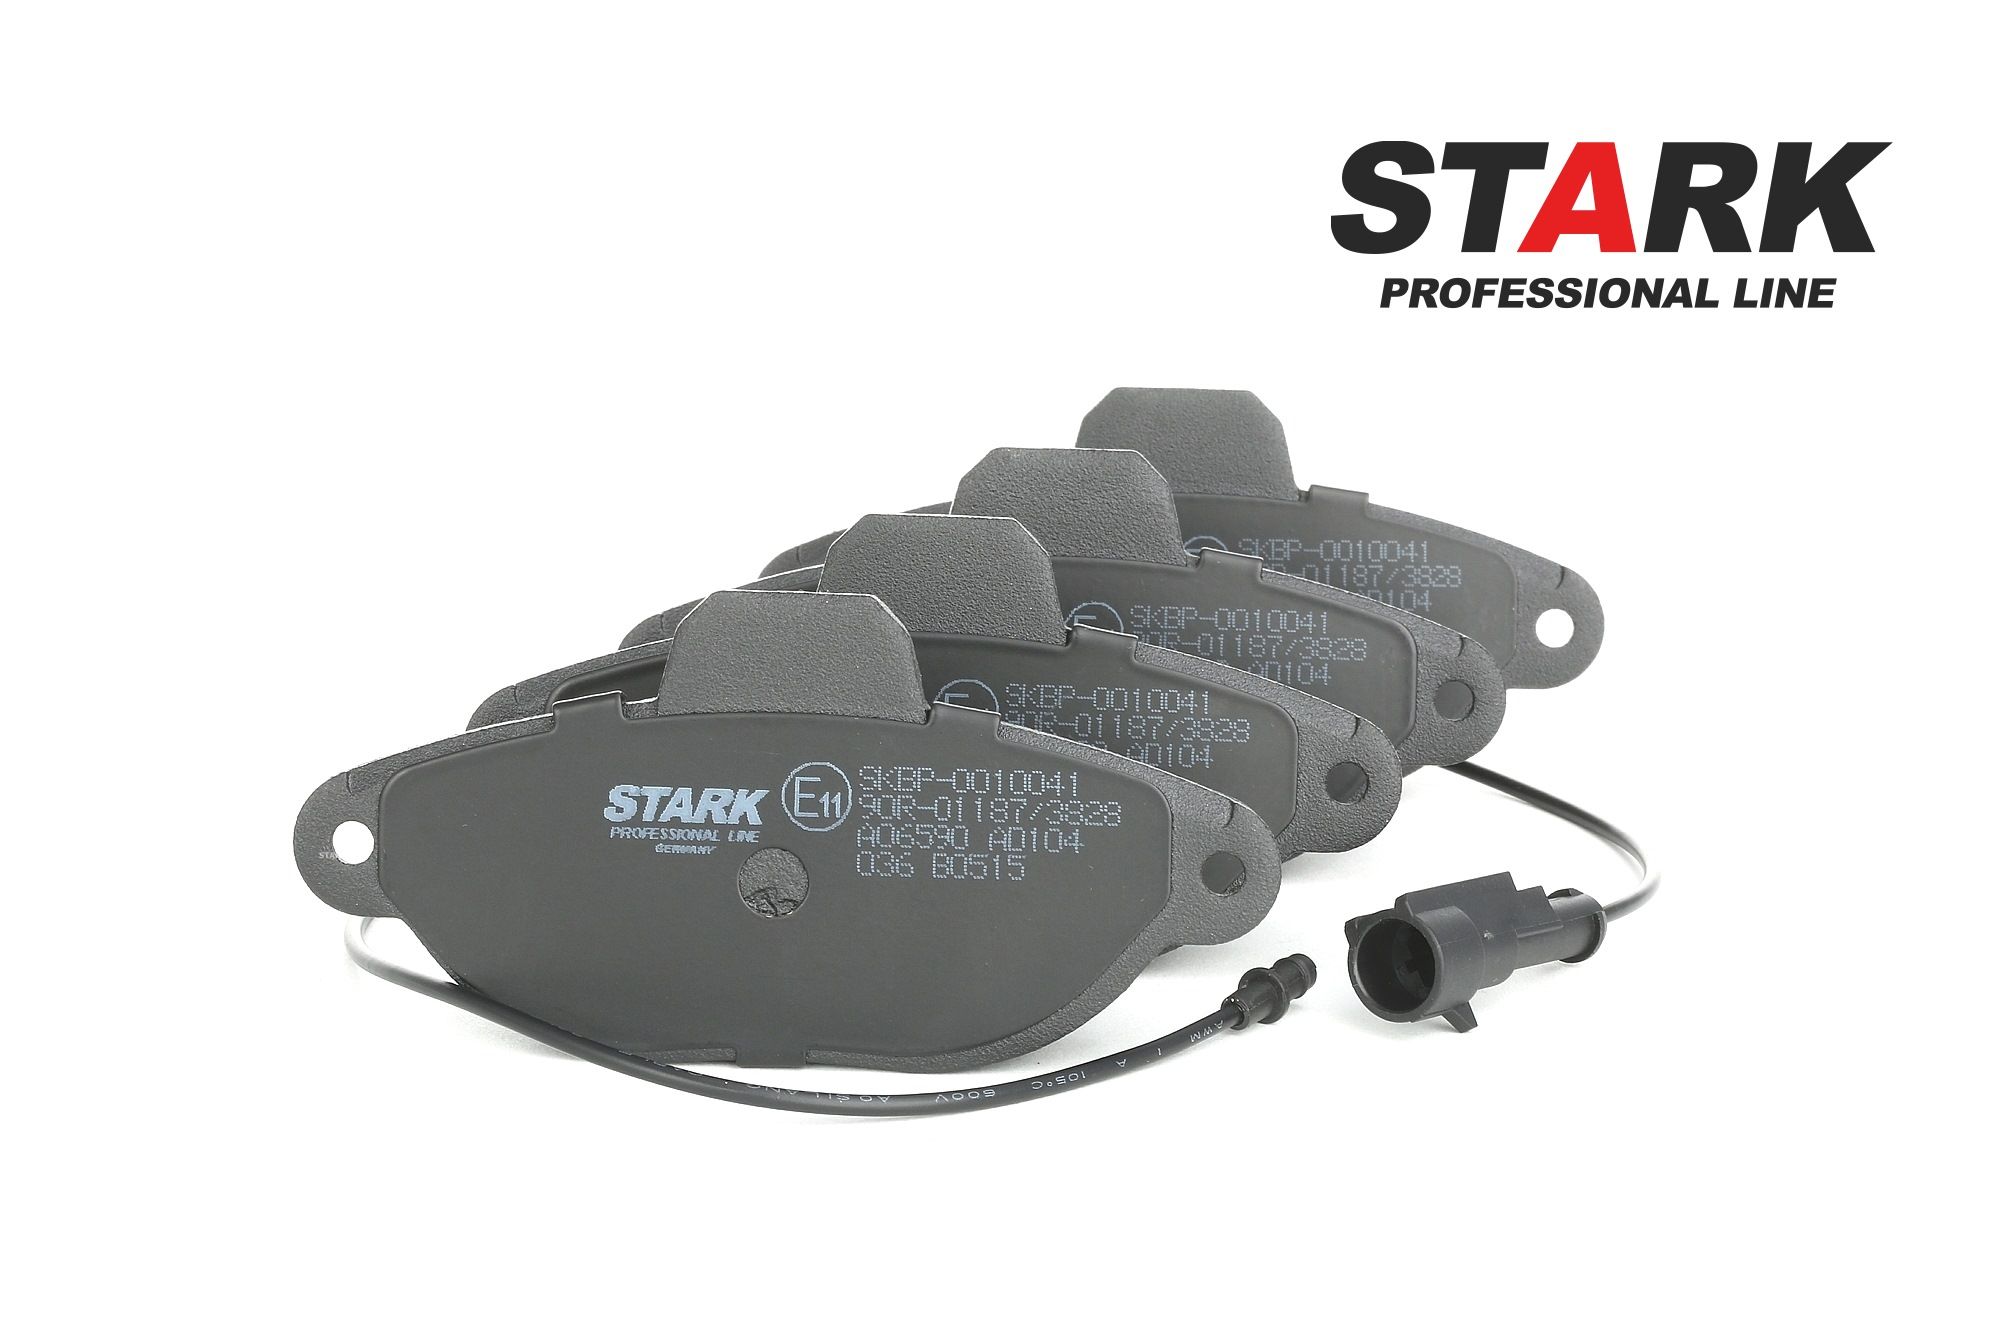 Originali STARK Pasticche dei freni SKBP-0010041 per FIAT SEICENTO